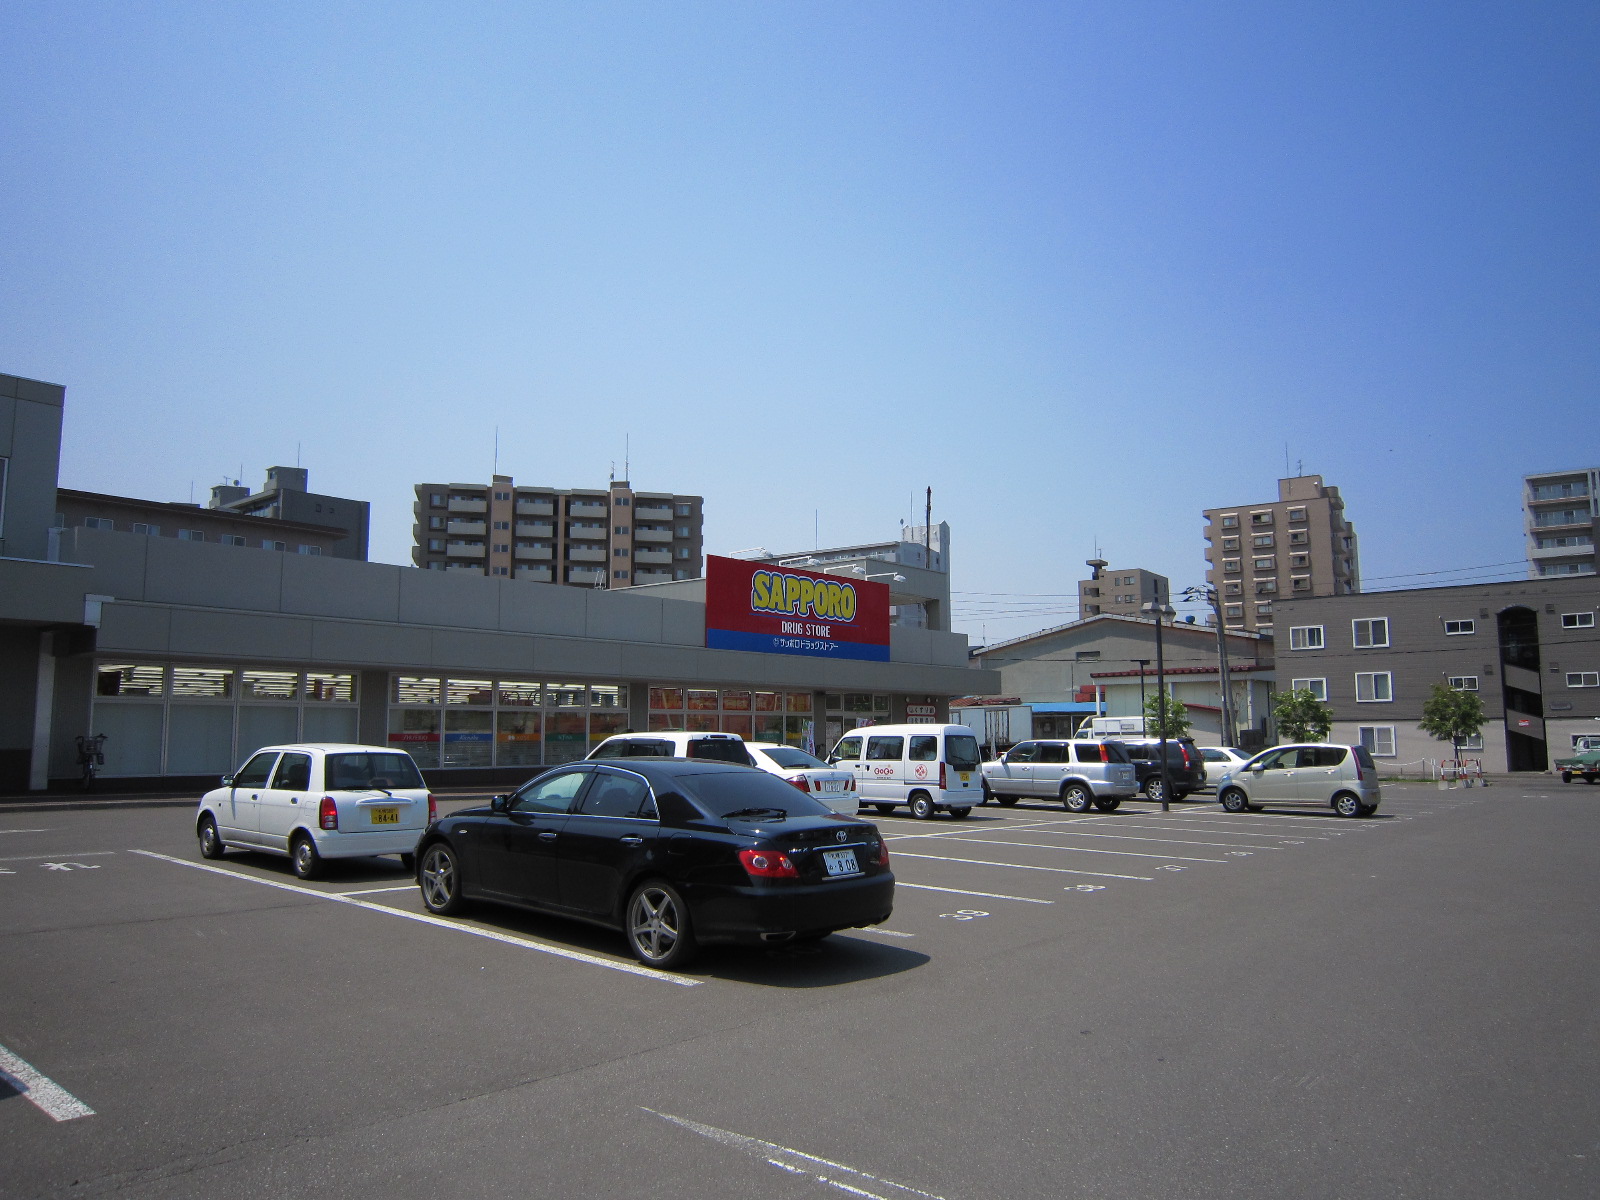 Dorakkusutoa. Sapporo drugstores Higashisapporo shop 330m until (drugstore)